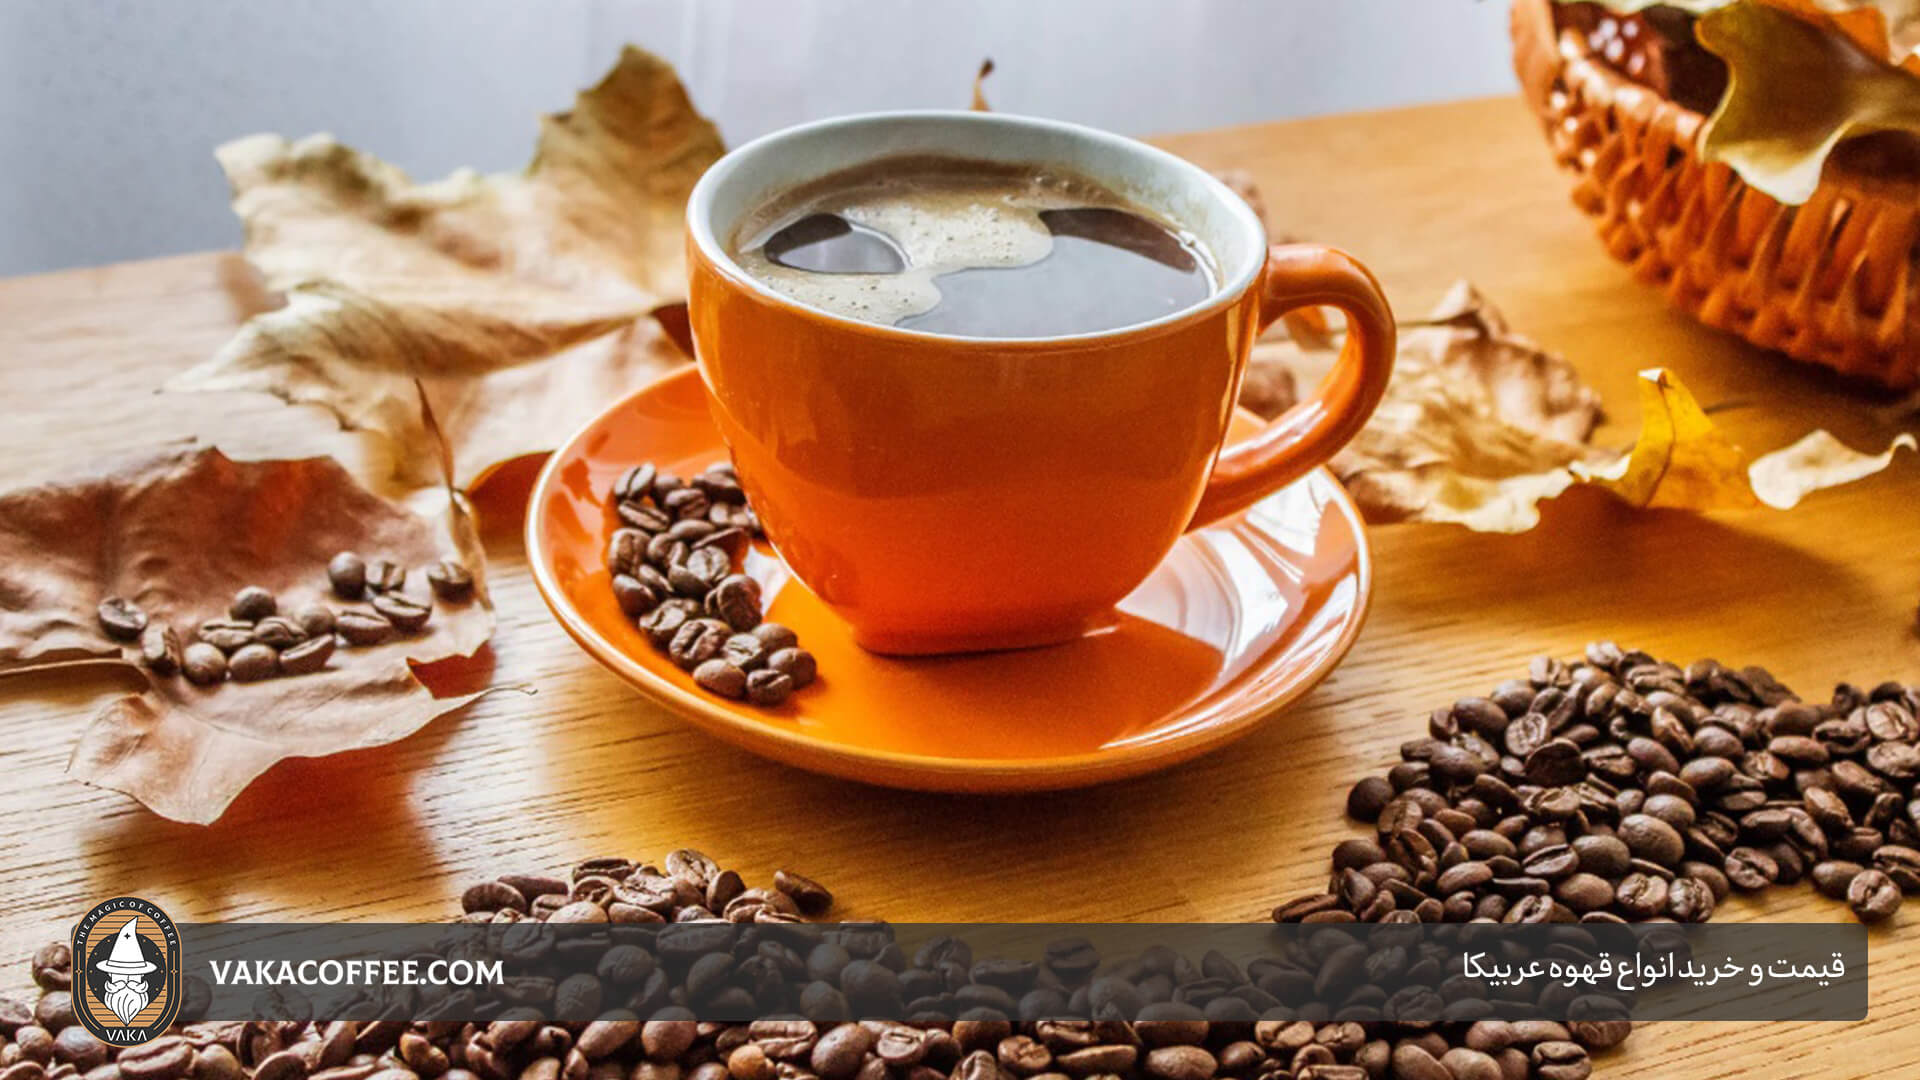 قیمت و خرید انواع قهوه عربیکا | قهوه واکا